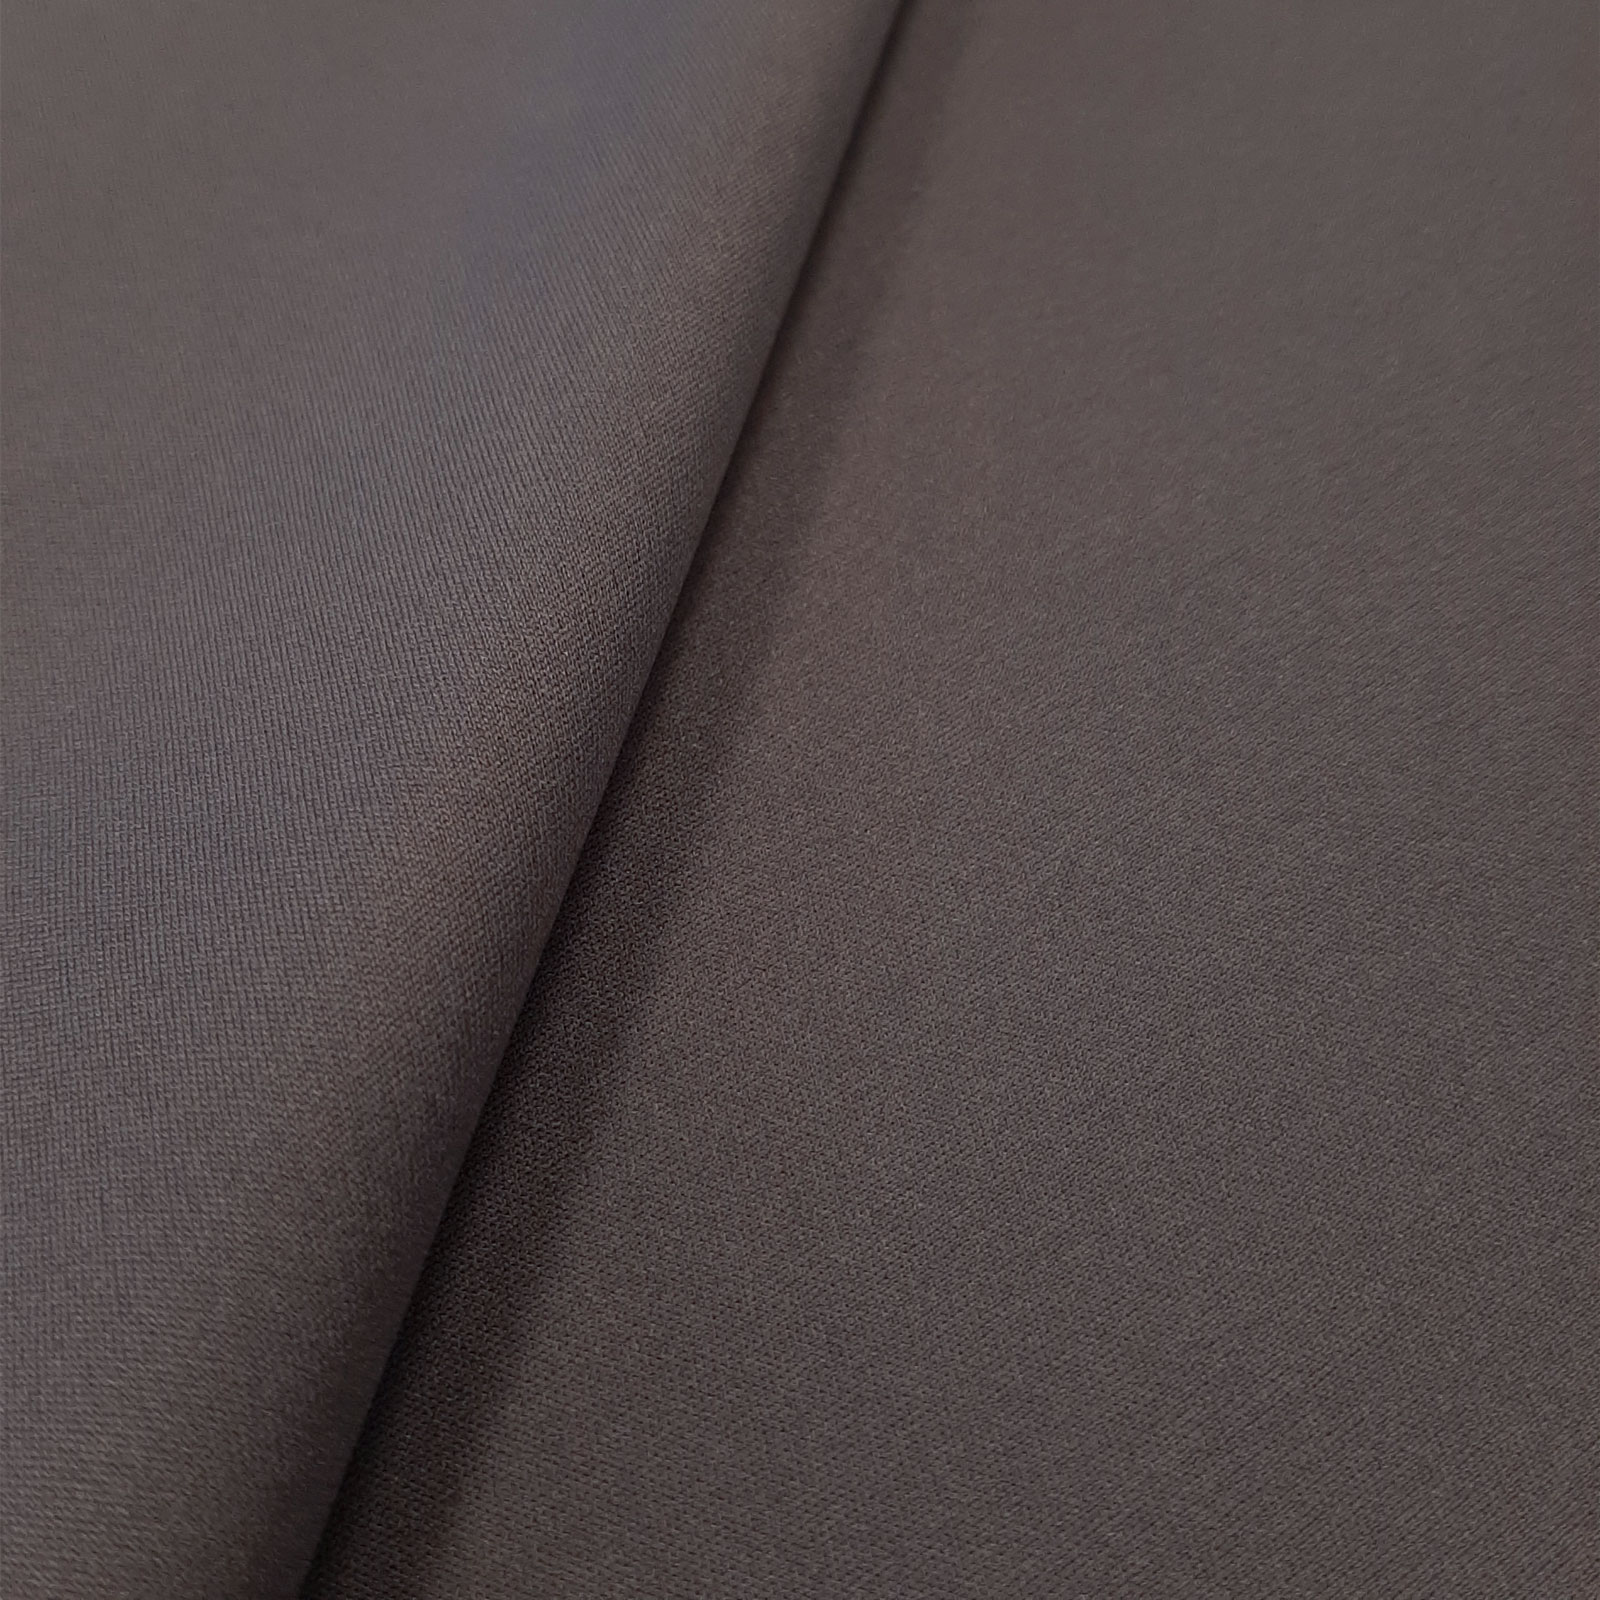 Denali - elastische softshell met klimaatmembraan - donkergrijs